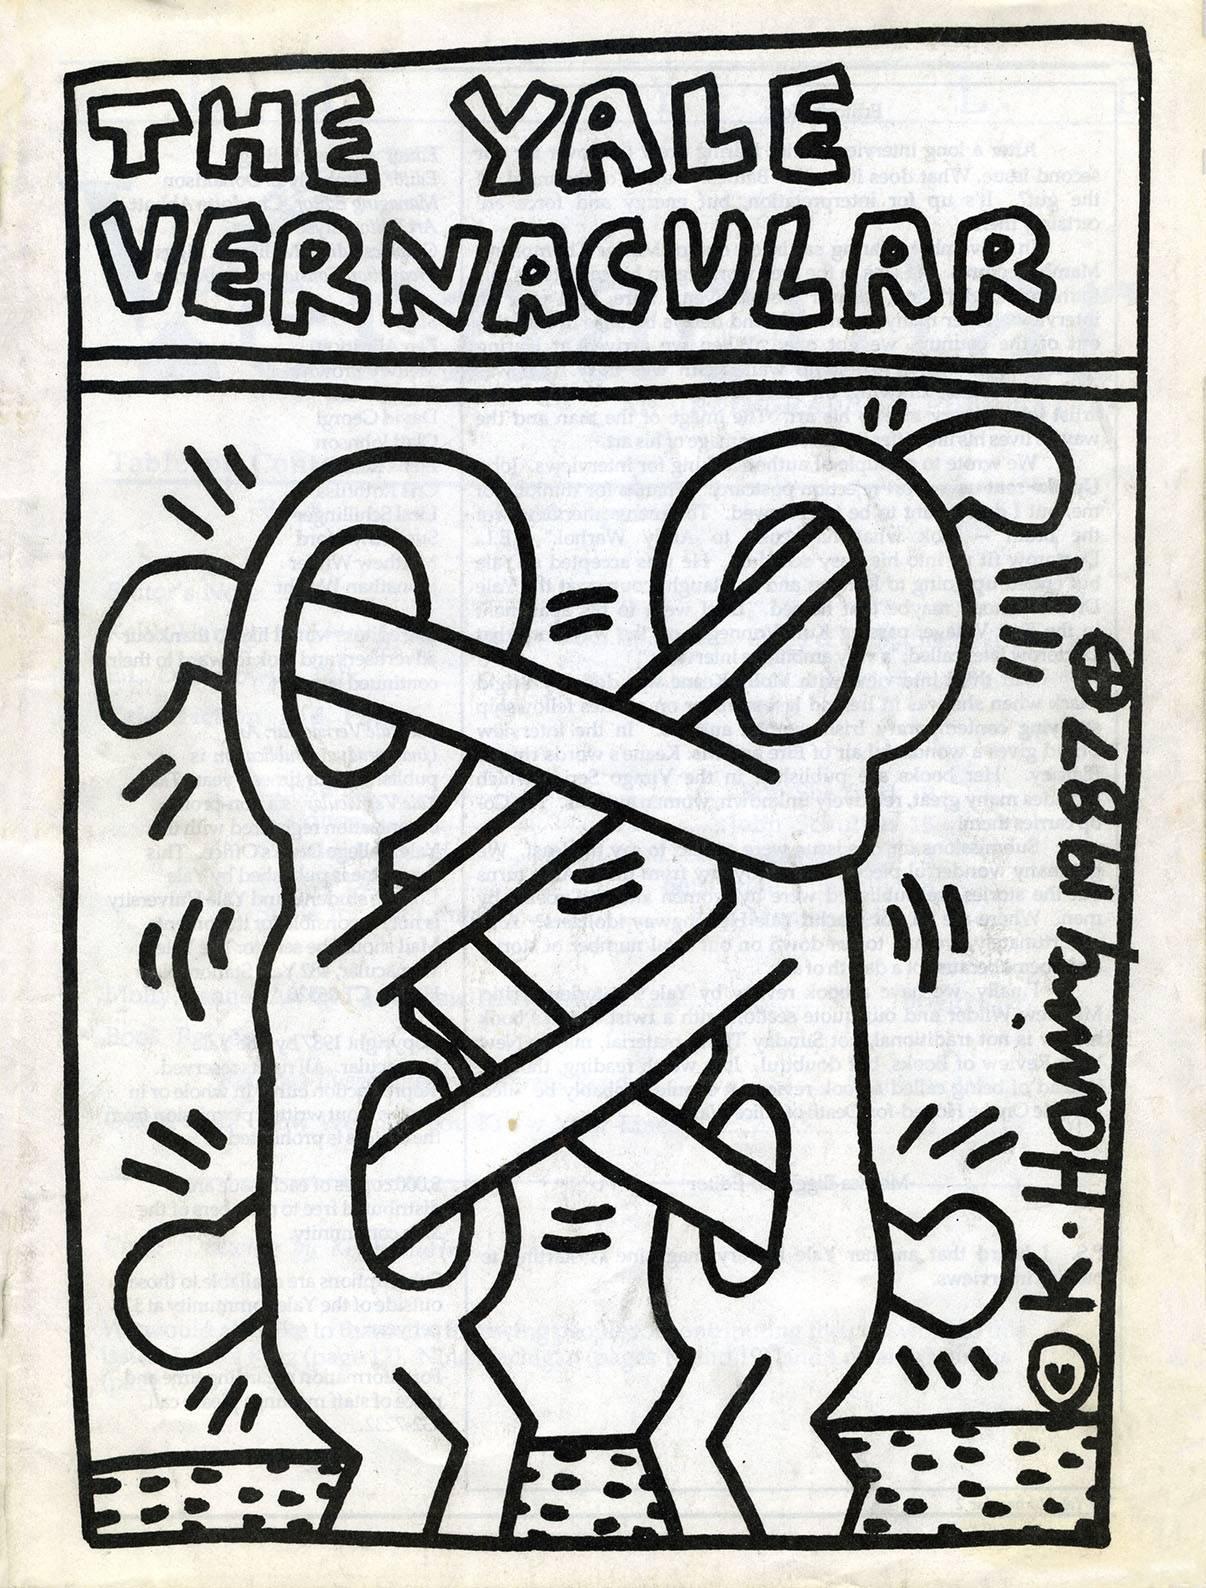 Keith Haring 1987 :
The Yale Vernacular 1987, avec une couverture classique de Keith Haring. Une rare pièce de collection vintage des années 1980 de Keith Haring qui serait fantastiquement encadrée. La signature de Keith Haring est imprimée sur le